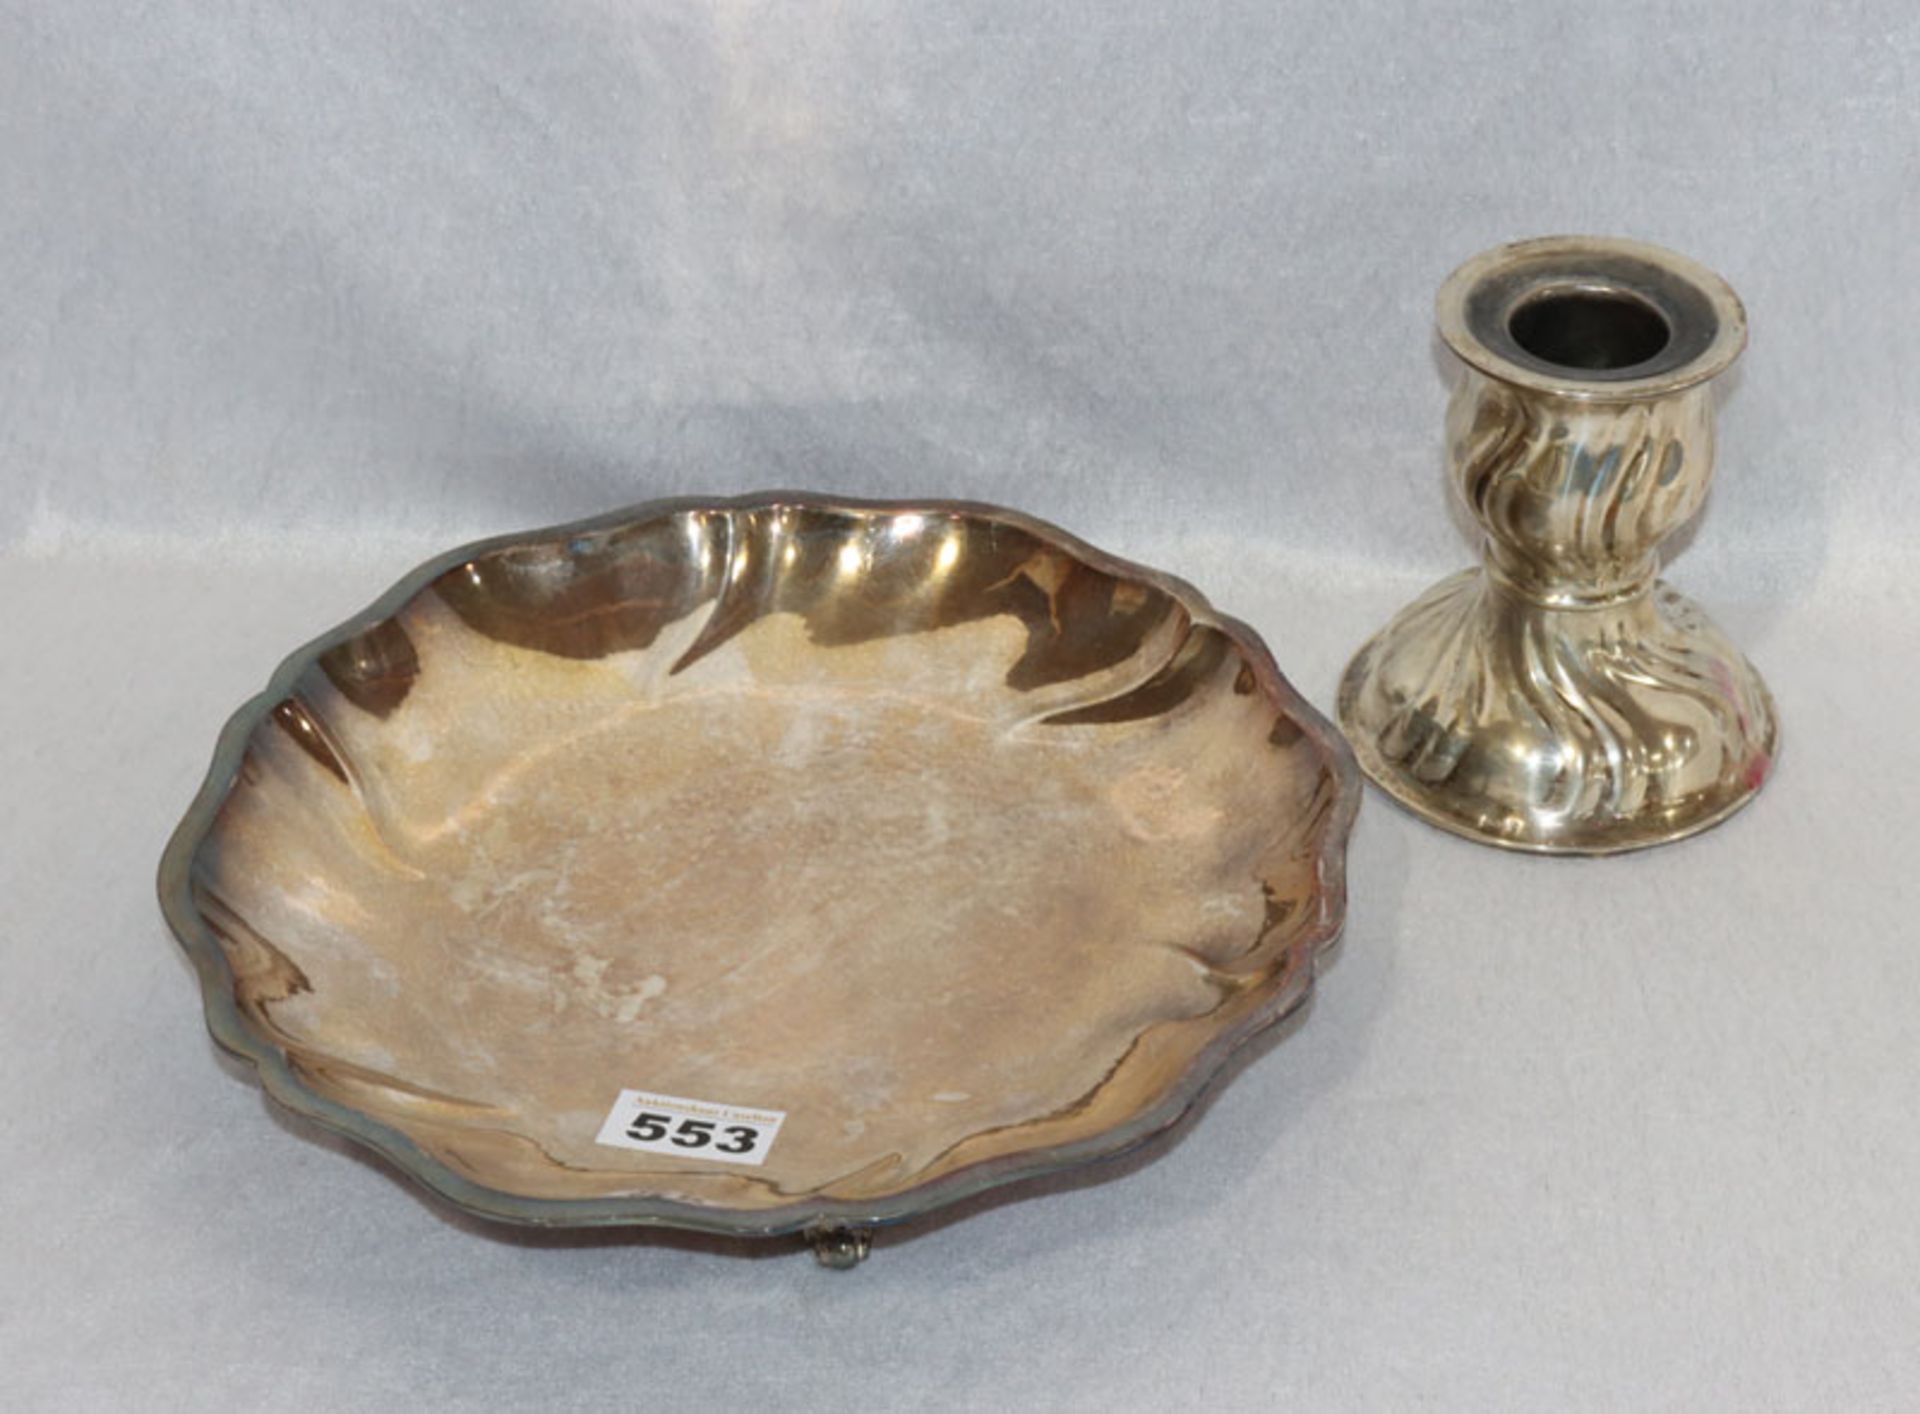 Silber-Konvolut, zus. 653 gr., 835 Silber Kerzenleuchter in gedrehter Form, H 13 cm, und 835